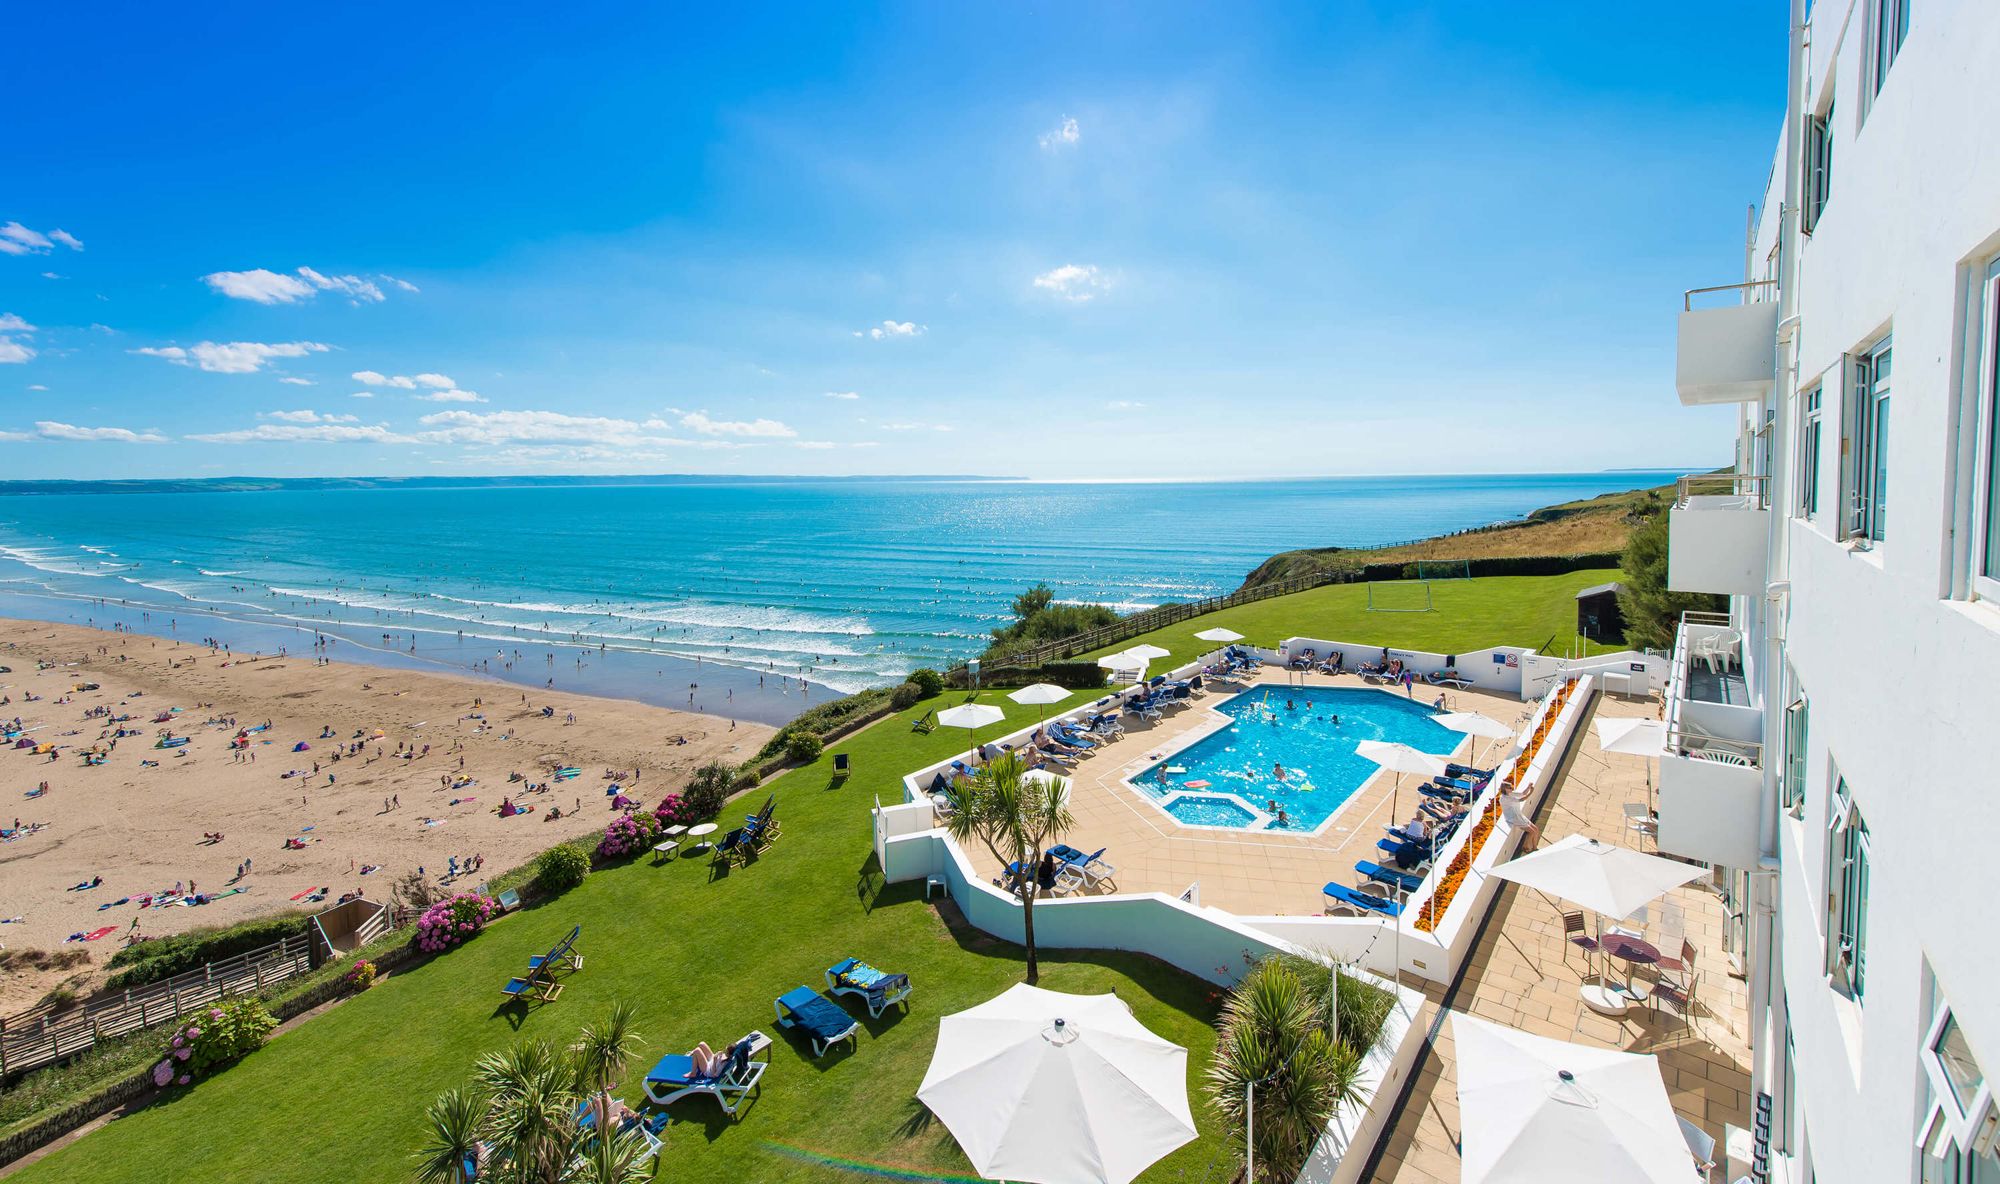 Britains best seaside hotels